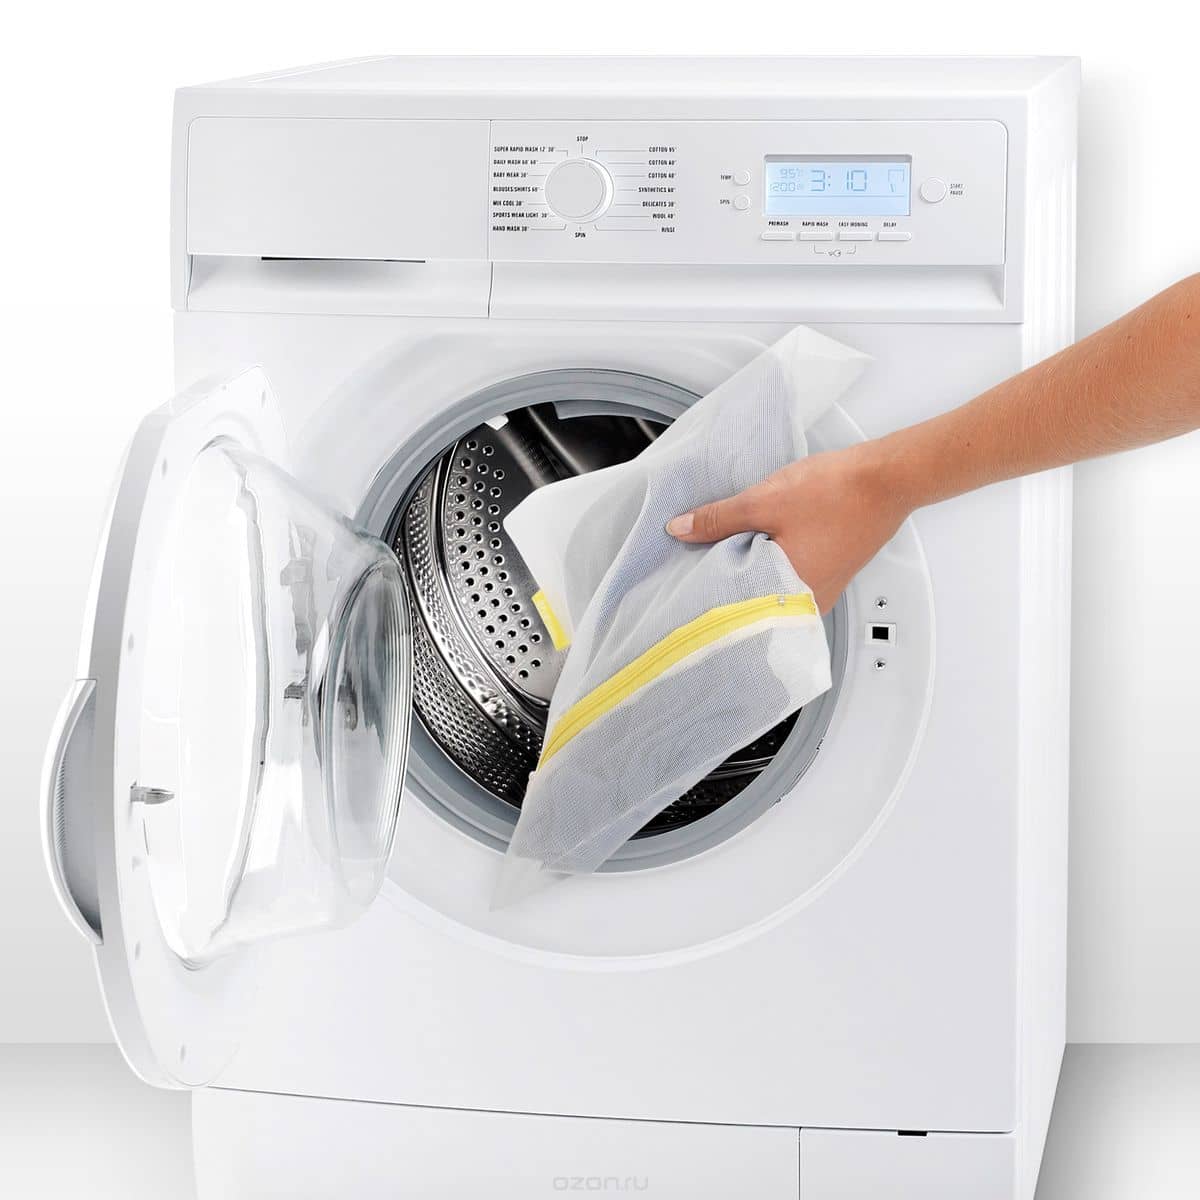 Мішки для прання білизни, взуття та одягу в пральній машині — огляд